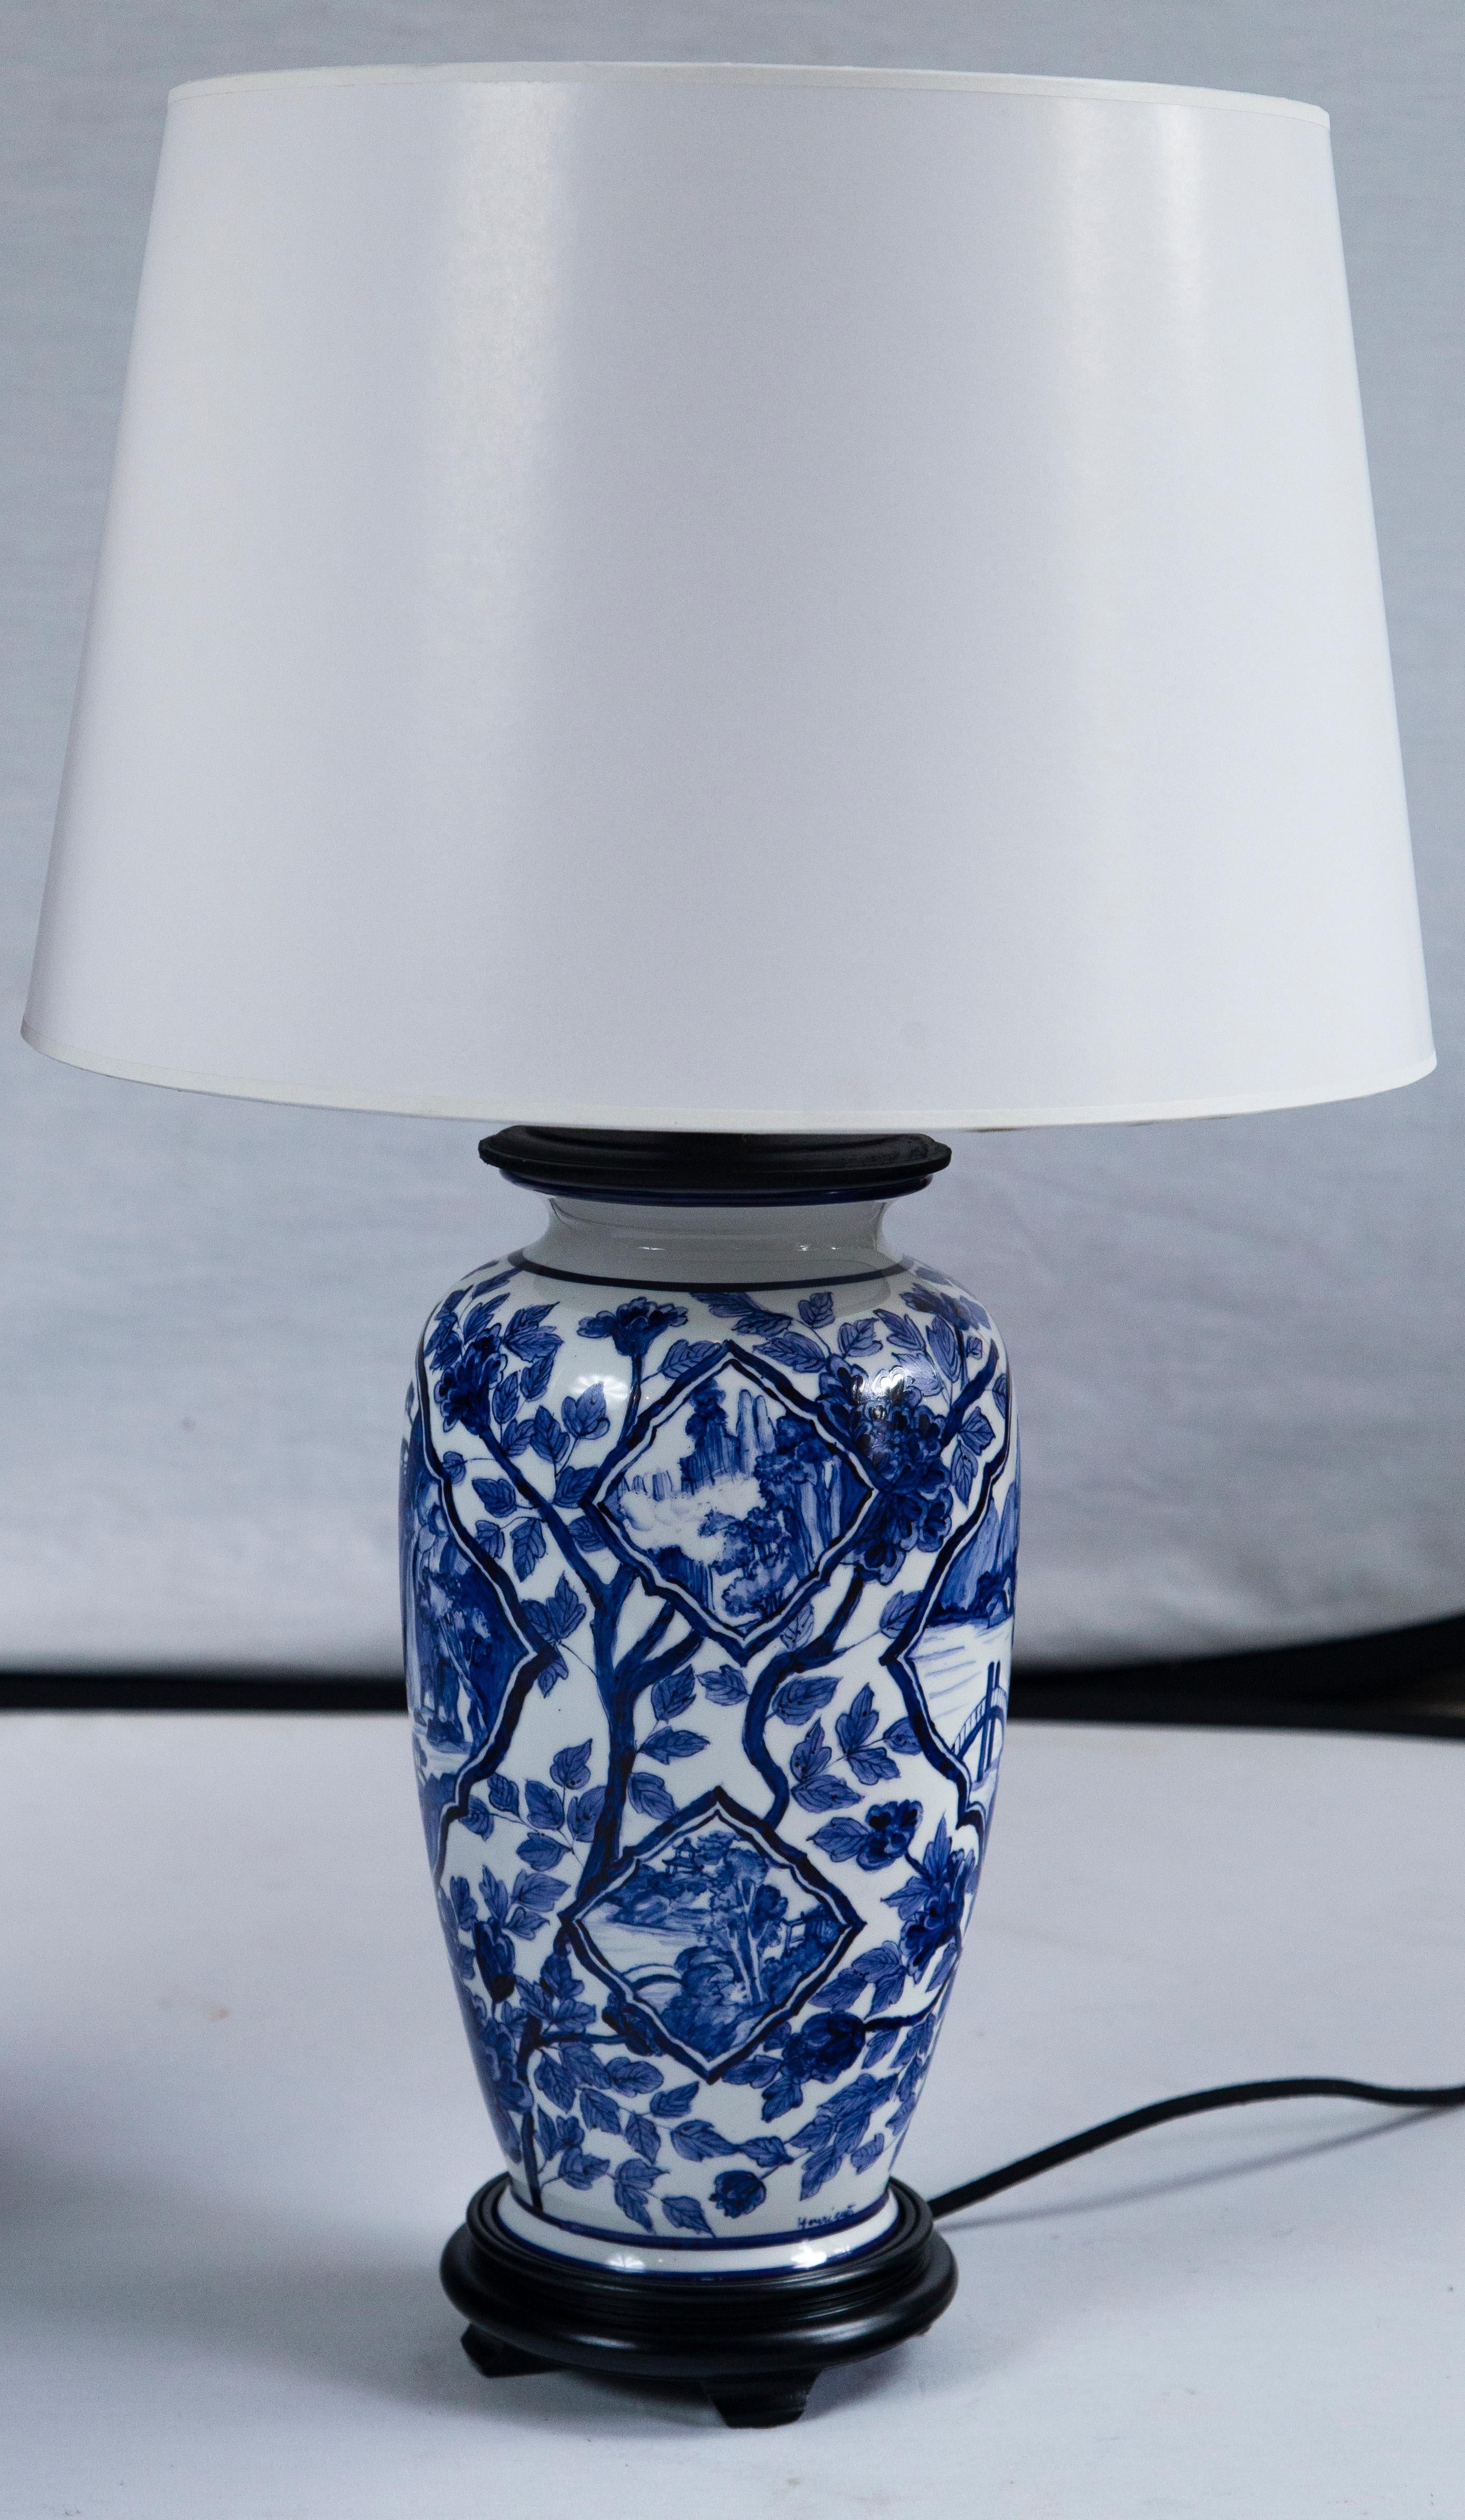 Paar asiatische Keramiklampen, 20. Jahrhundert. Insgesamt blau-weißes Blumenmuster mit Landschaftsmotiven. Neu verkabelt und montiert.